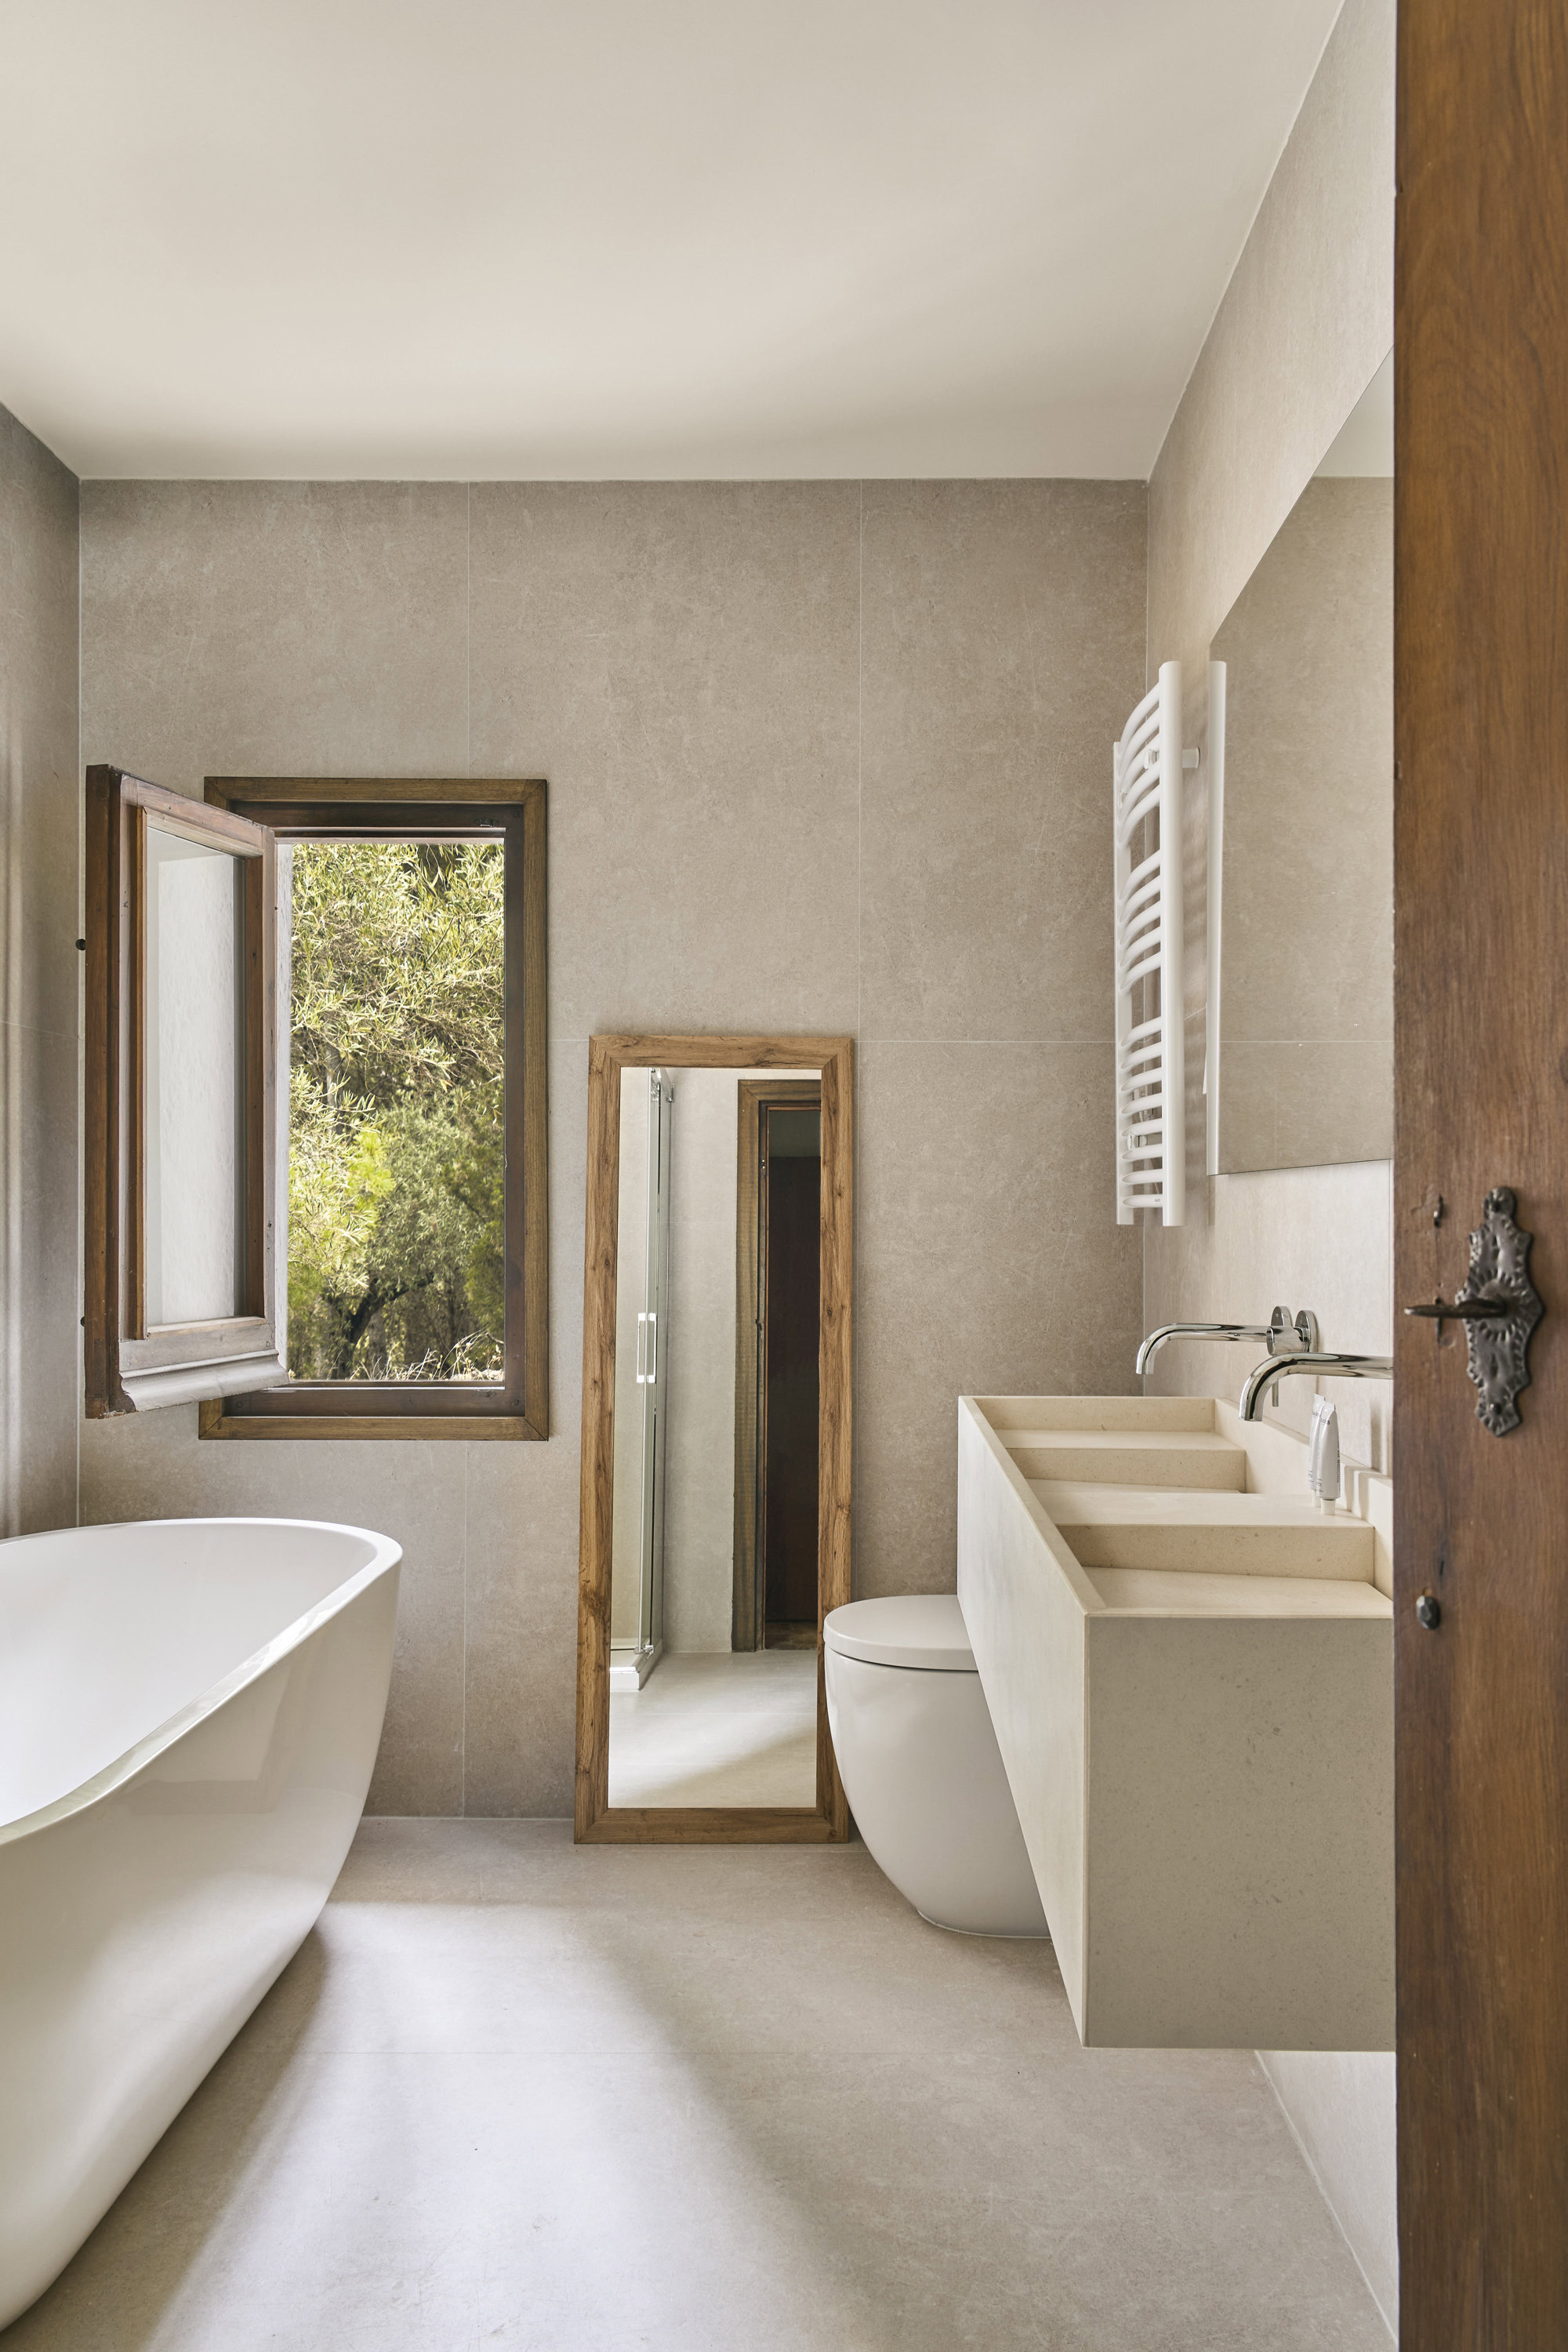  Baño con lavabo a medida de piedra caliza blanca paloma, diseño de Bueno; grifería, de Rovira, y bañera, de Hudson Reed.